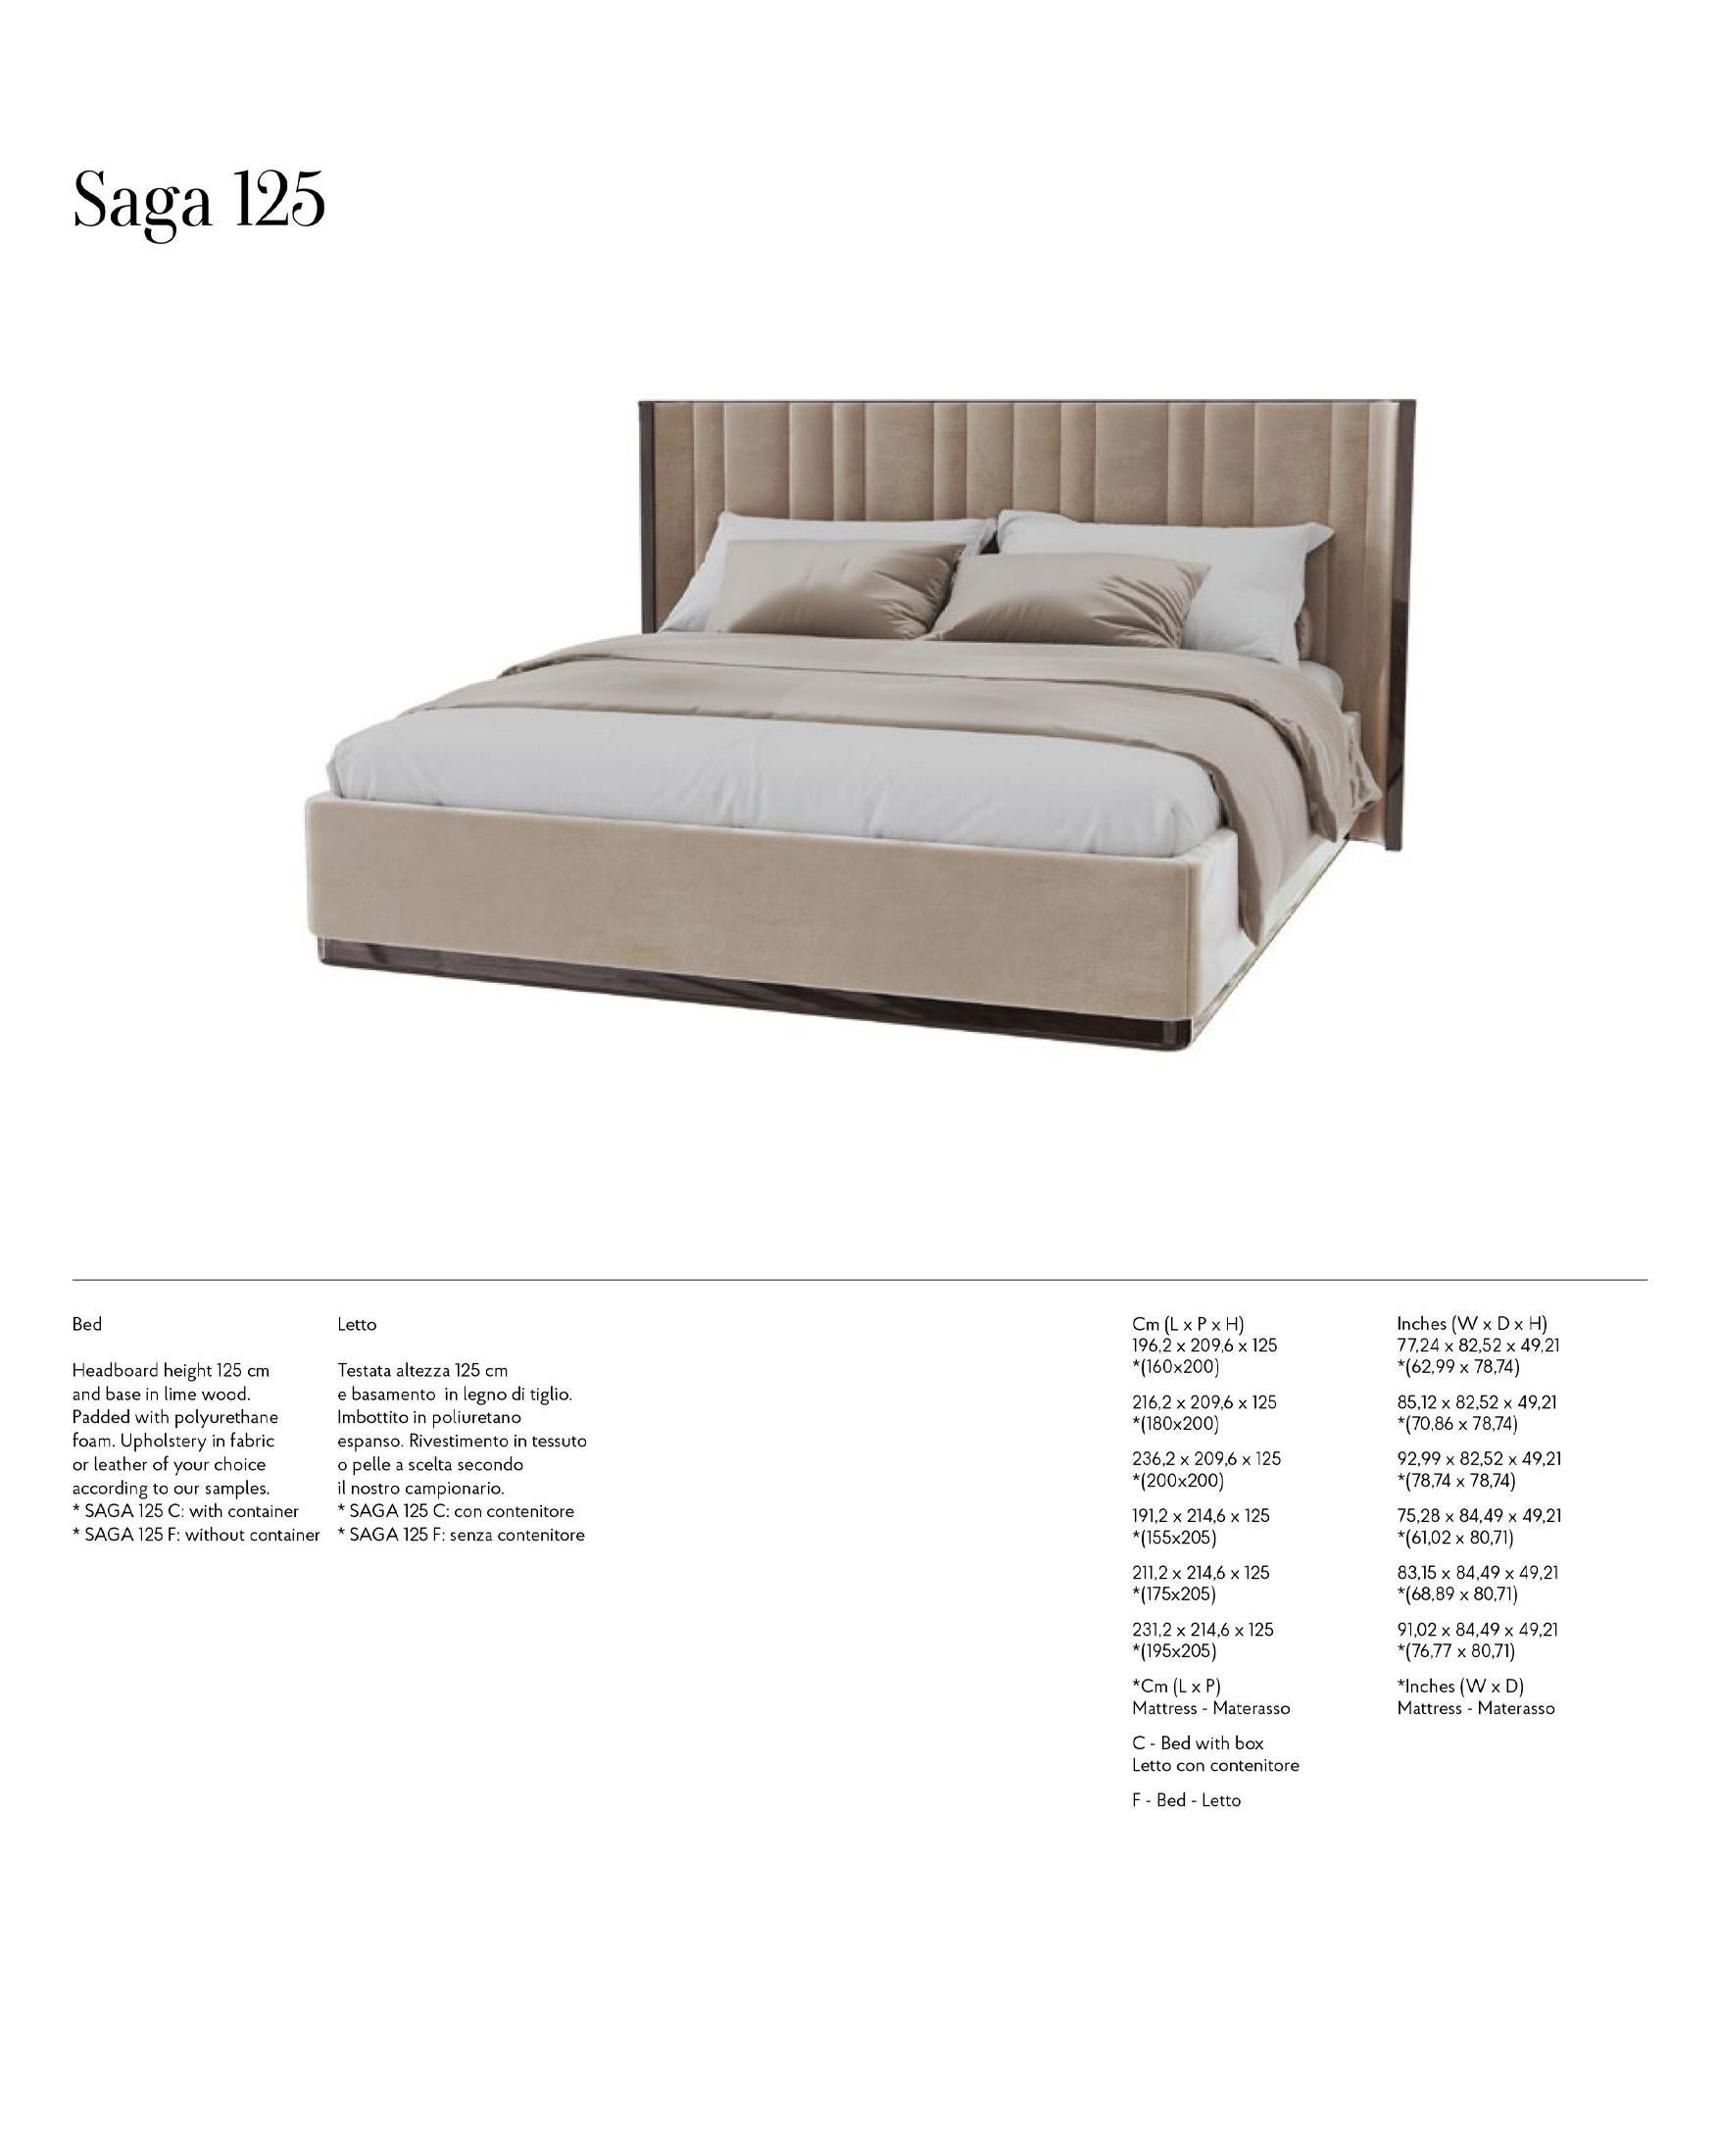 Saga 140 Italian Curved Bed Upholstered in Velvet Fabric For Sale 2